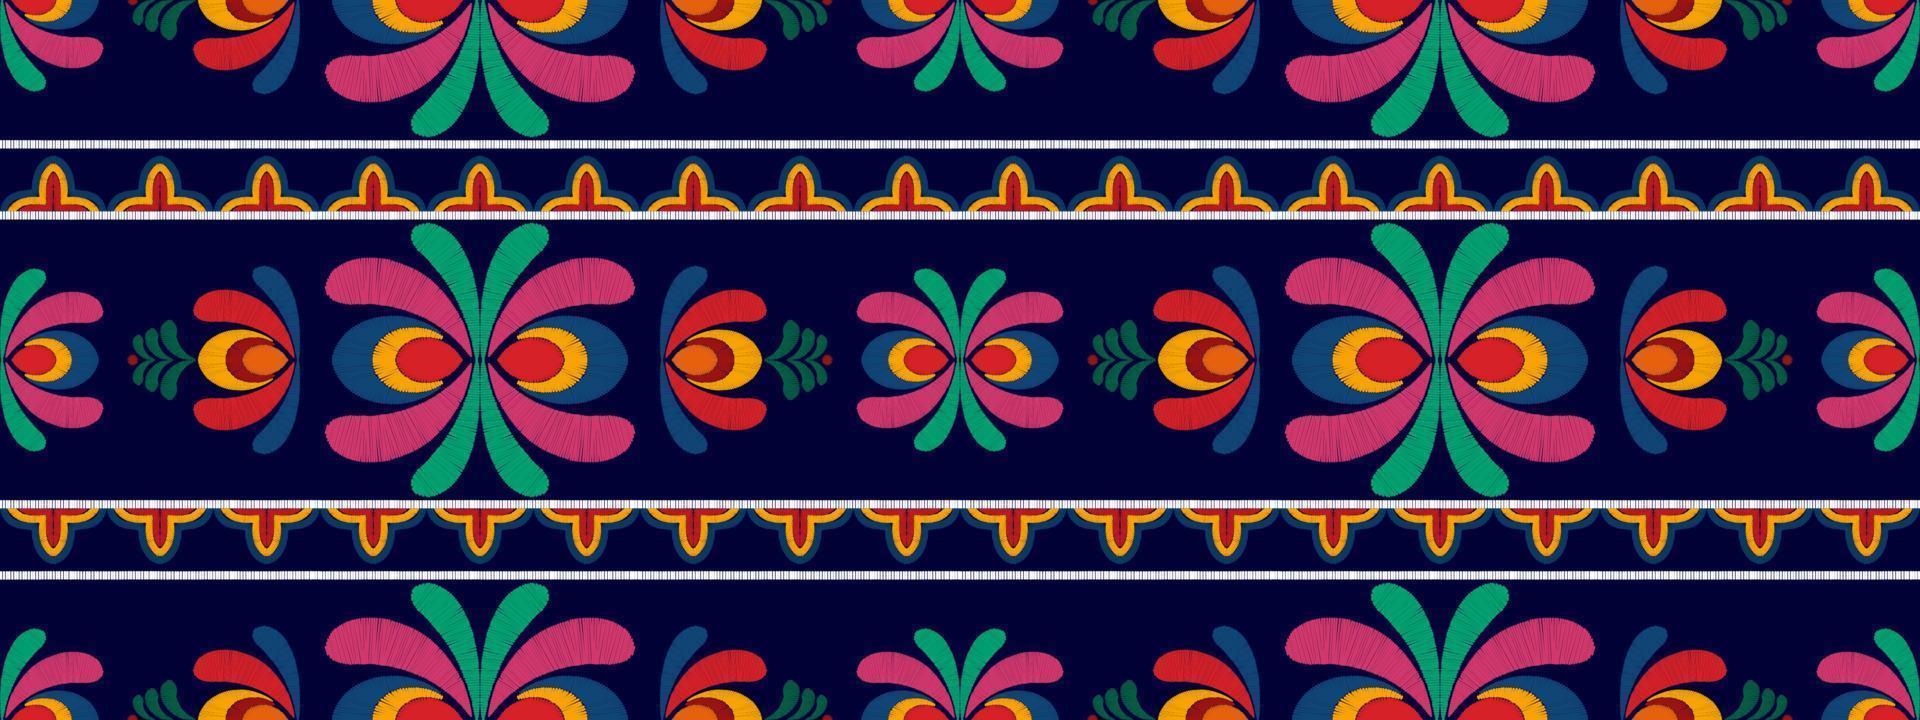 design de padrão têxtil sem costura étnica floral ikat. tecido asteca tapete mandala ornamentos têxteis decorações papel de parede. fundo de vetor de bordado tradicional de motivo de flor nativa boho tribal